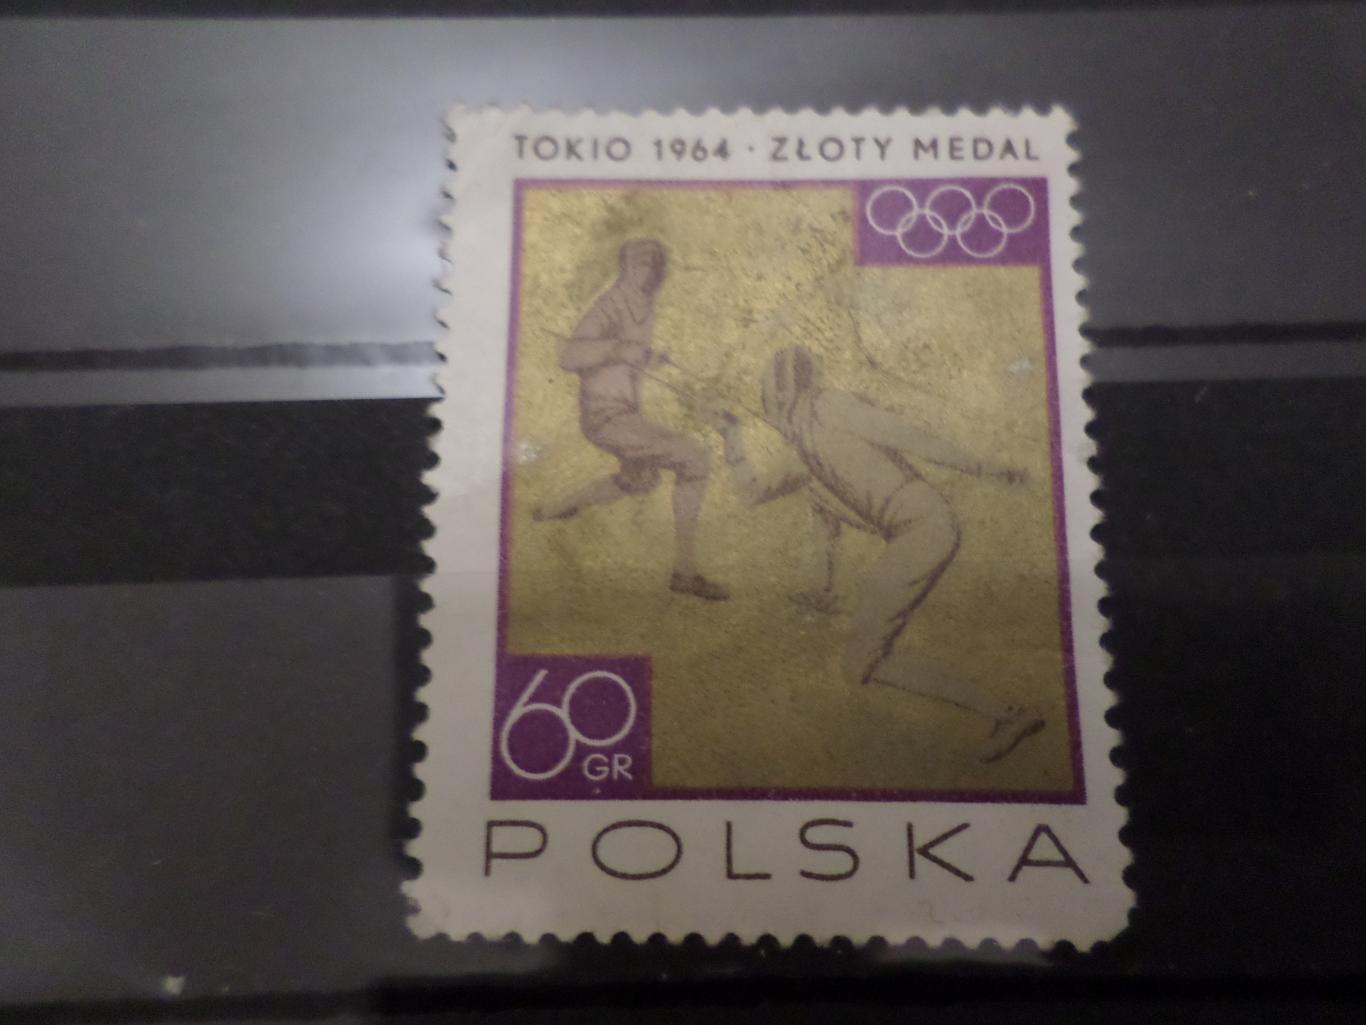 марка Польша Олимпиада1964 г. Токио фехтование чистая